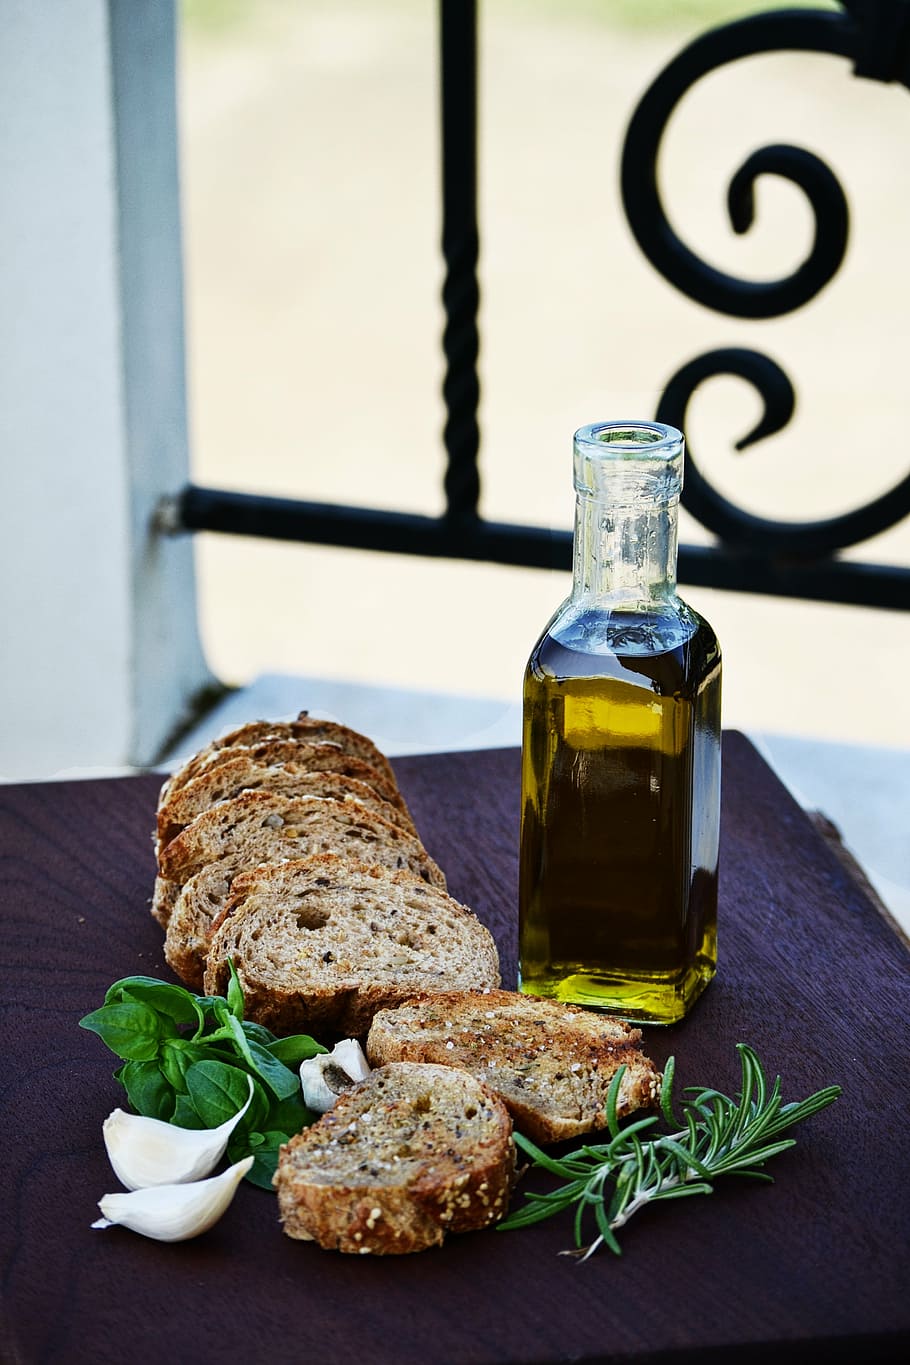 irisan, roti, meja, makanan, minyak zaitun, bawang putih, papan, luar, mediterania, rosemary